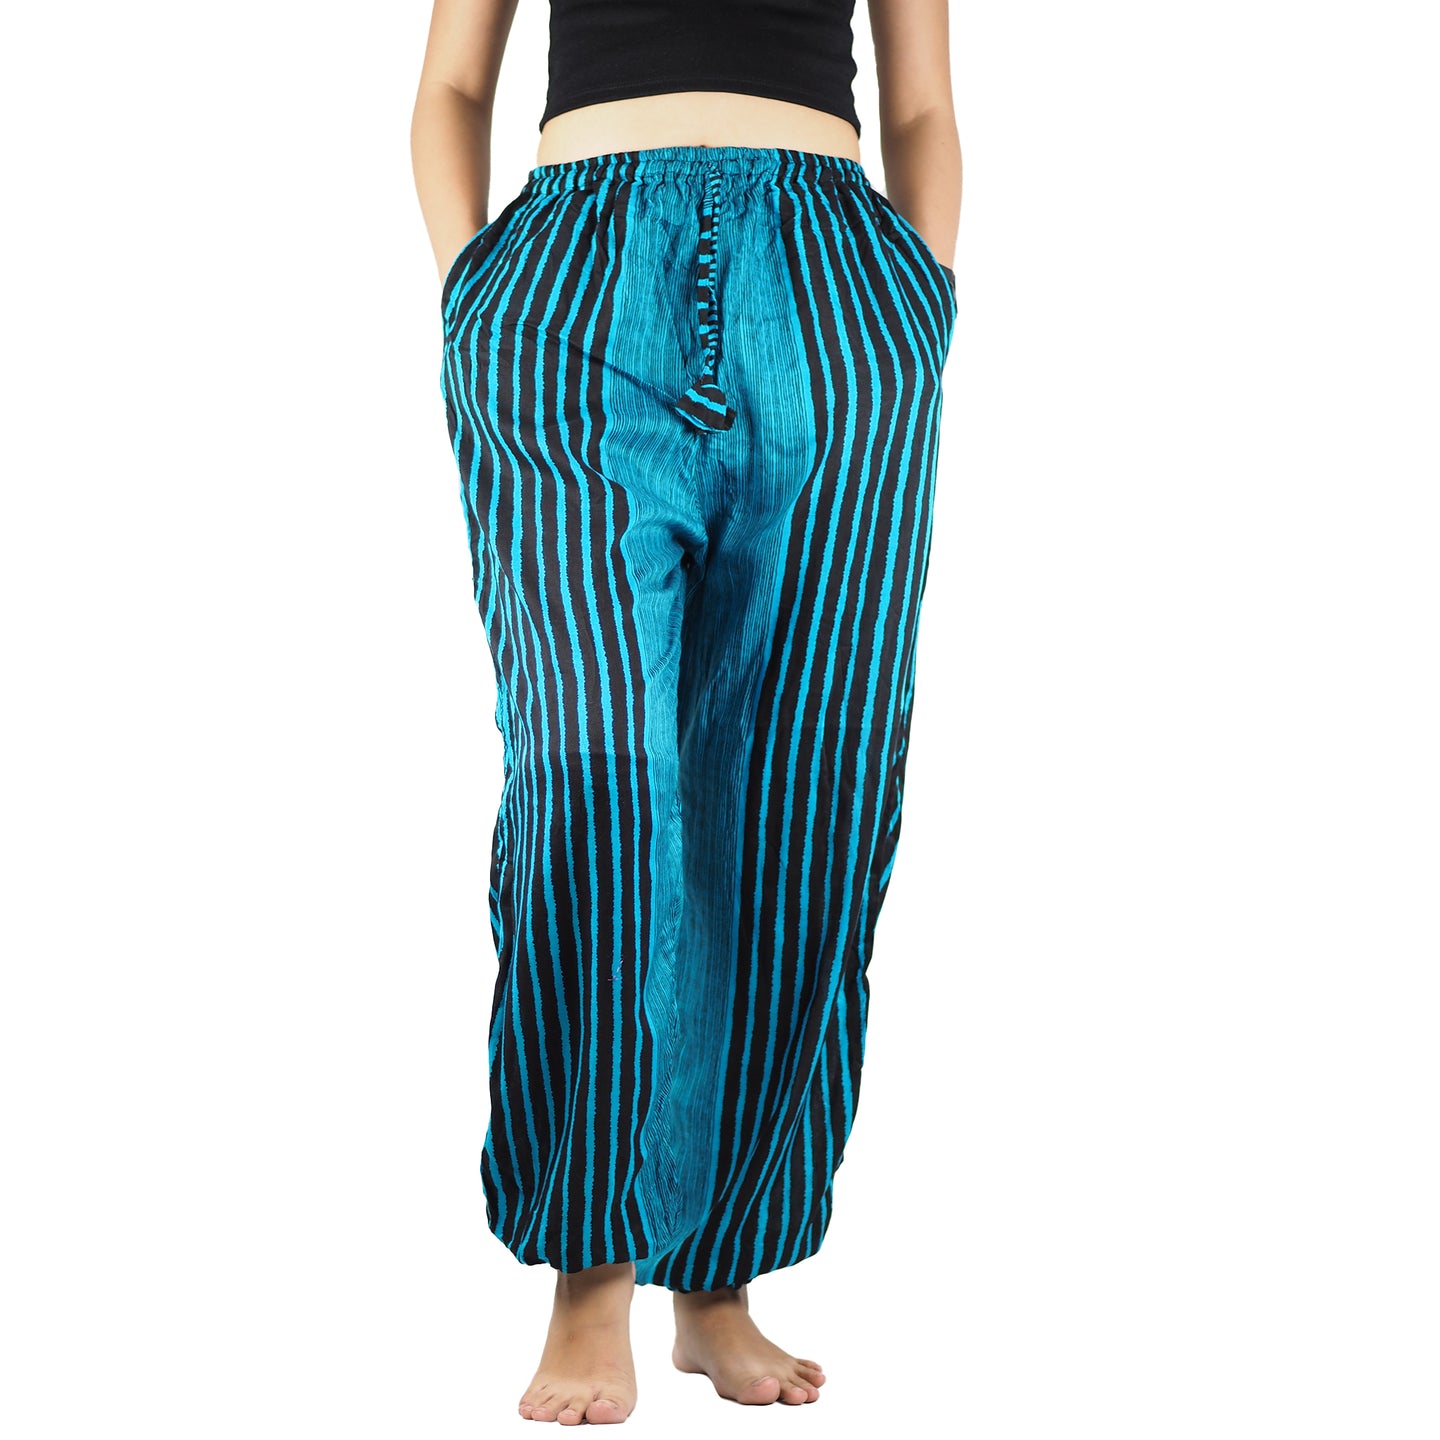 Zebra Unisex Drawstring Genie Pants in Ocean Blue PP0110 020077 01